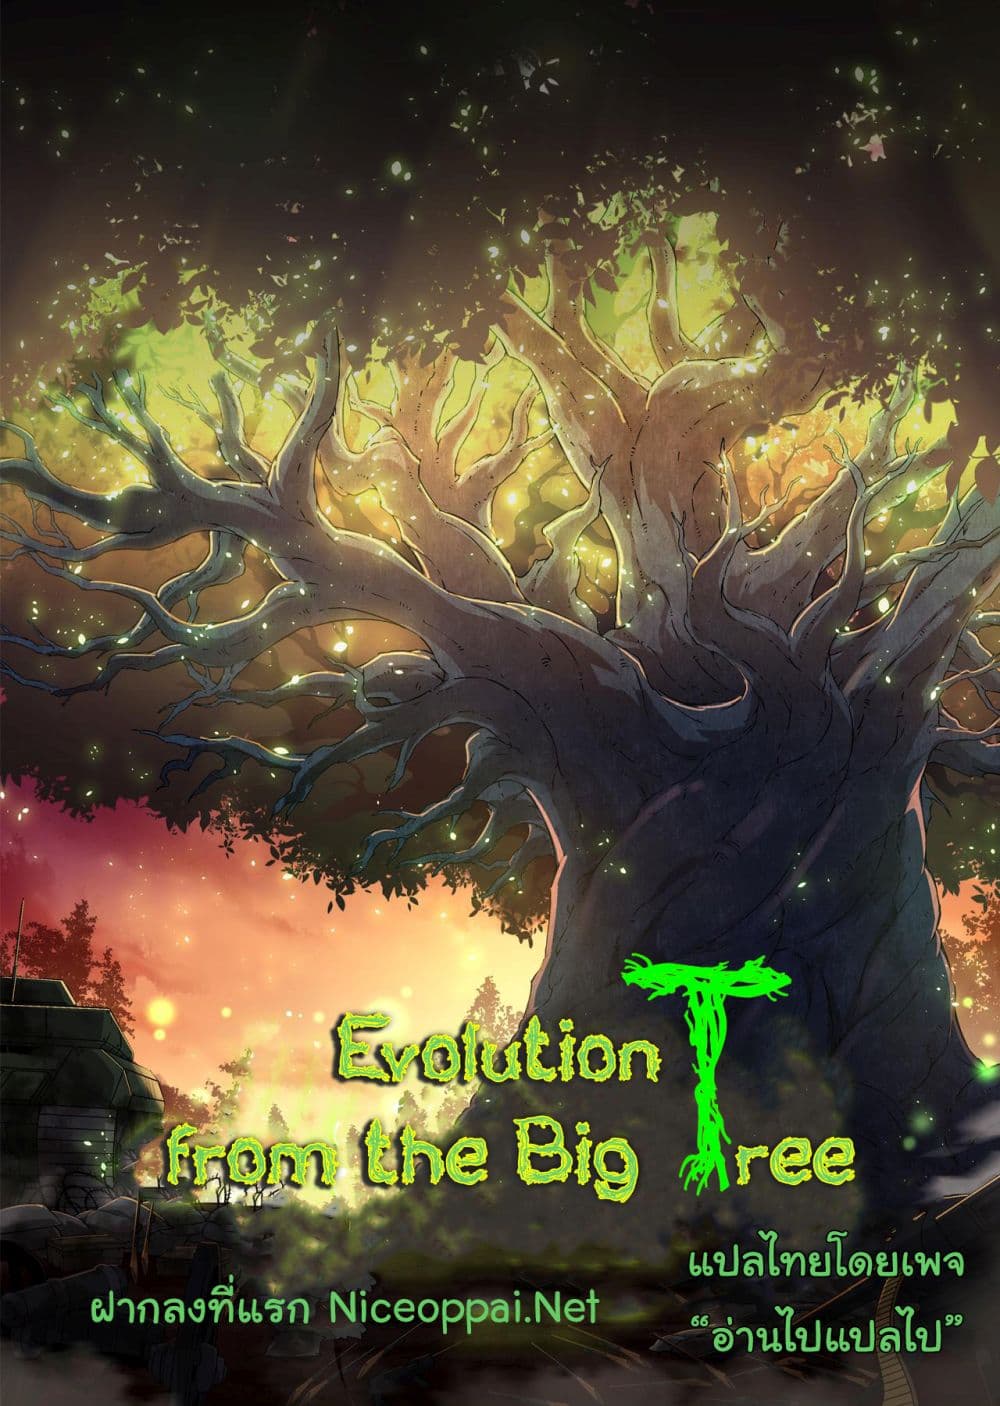 Evolution from the Big Tree Ã Â¸â€¢Ã Â¸Â­Ã Â¸â„¢Ã Â¸â€”Ã Â¸ÂµÃ Â¹Ë† 11 (61)